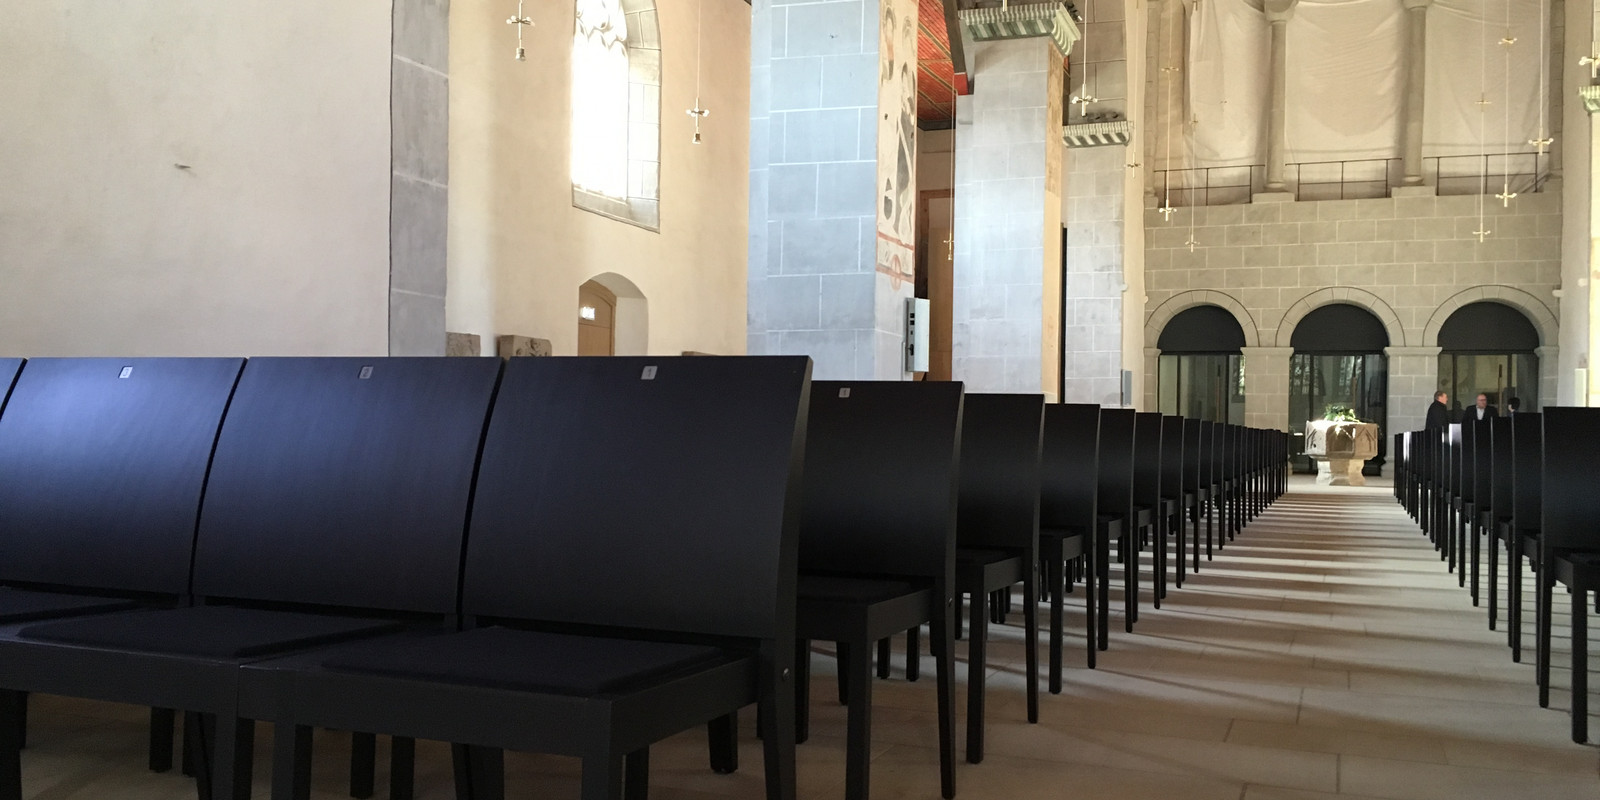 Thonet Stühle in der Stiftskirche Bild 0